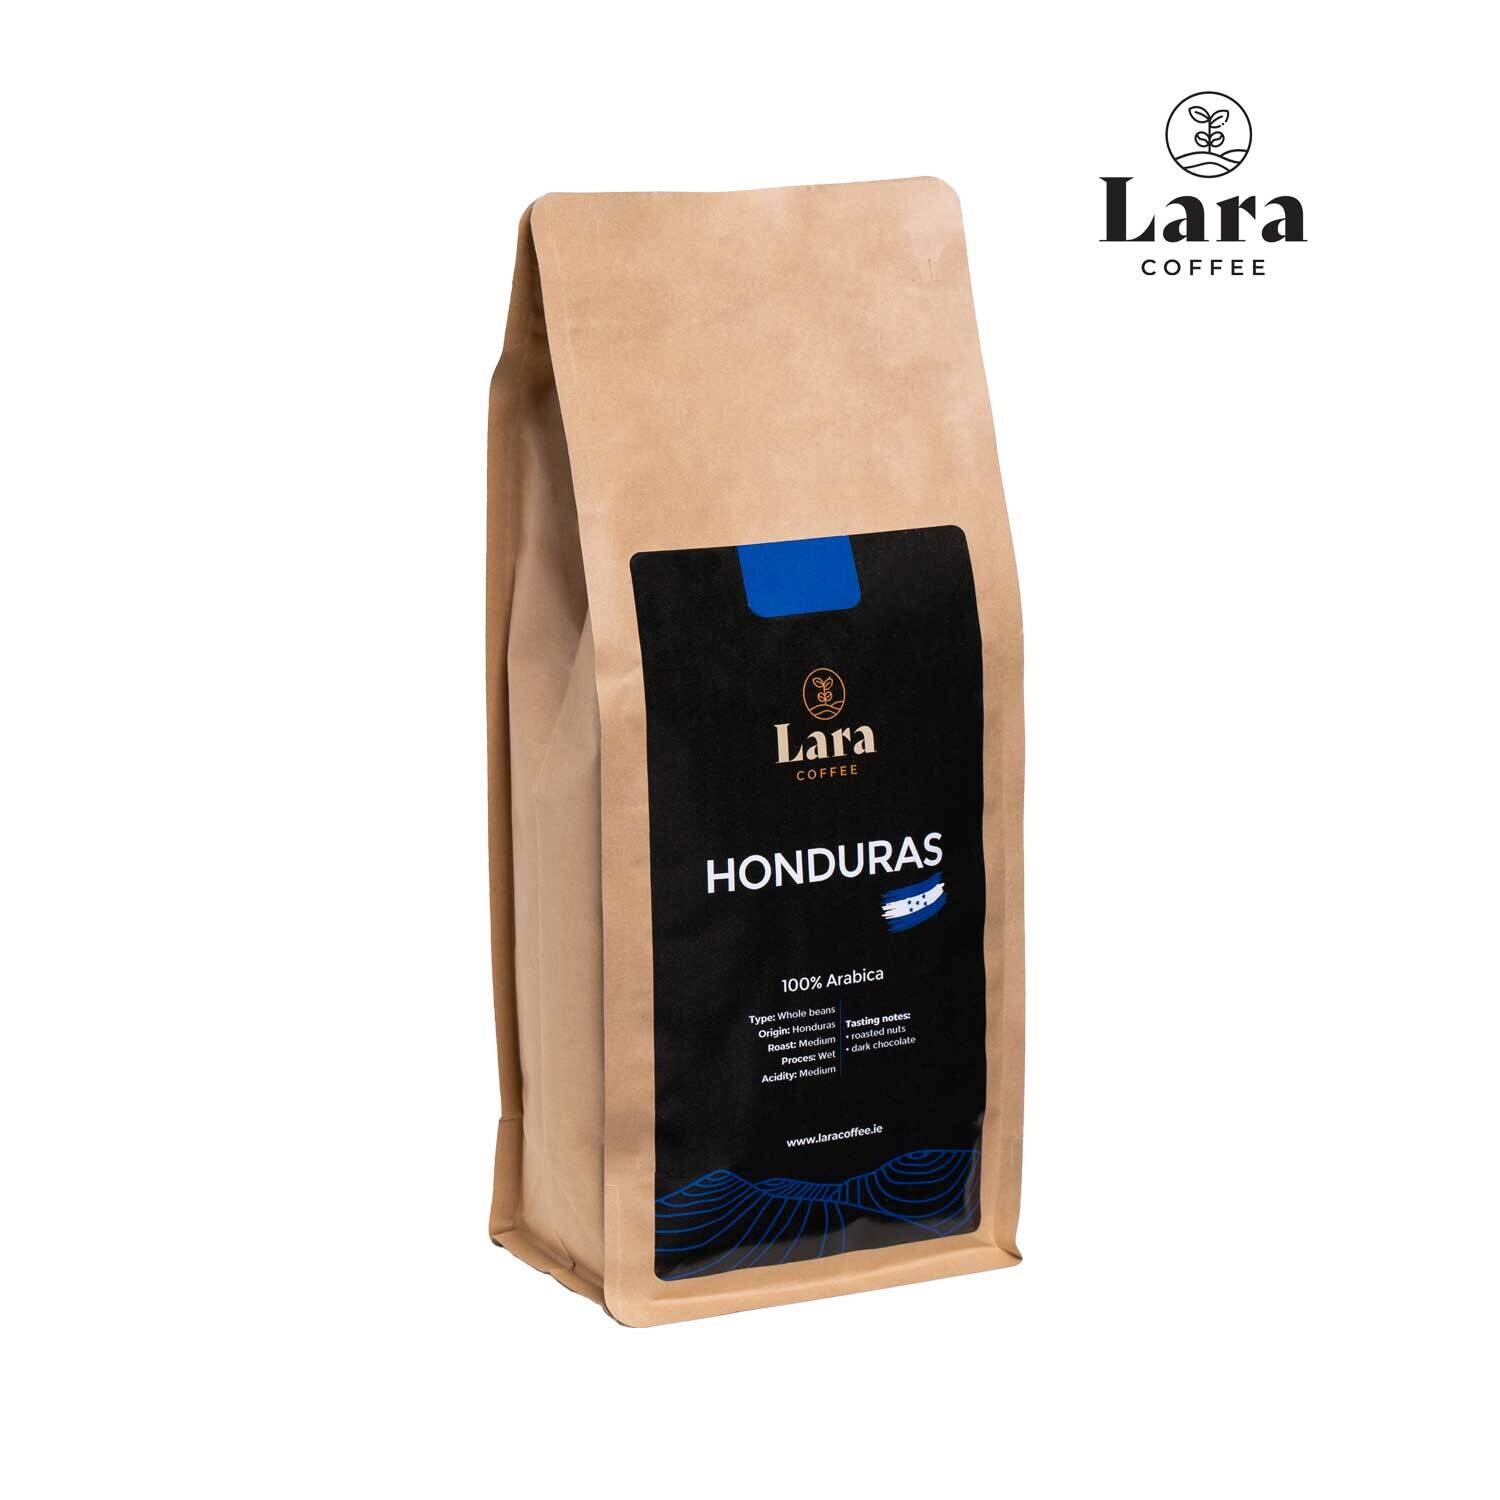 Lara Coffee Honduras Whole Beans 1kg